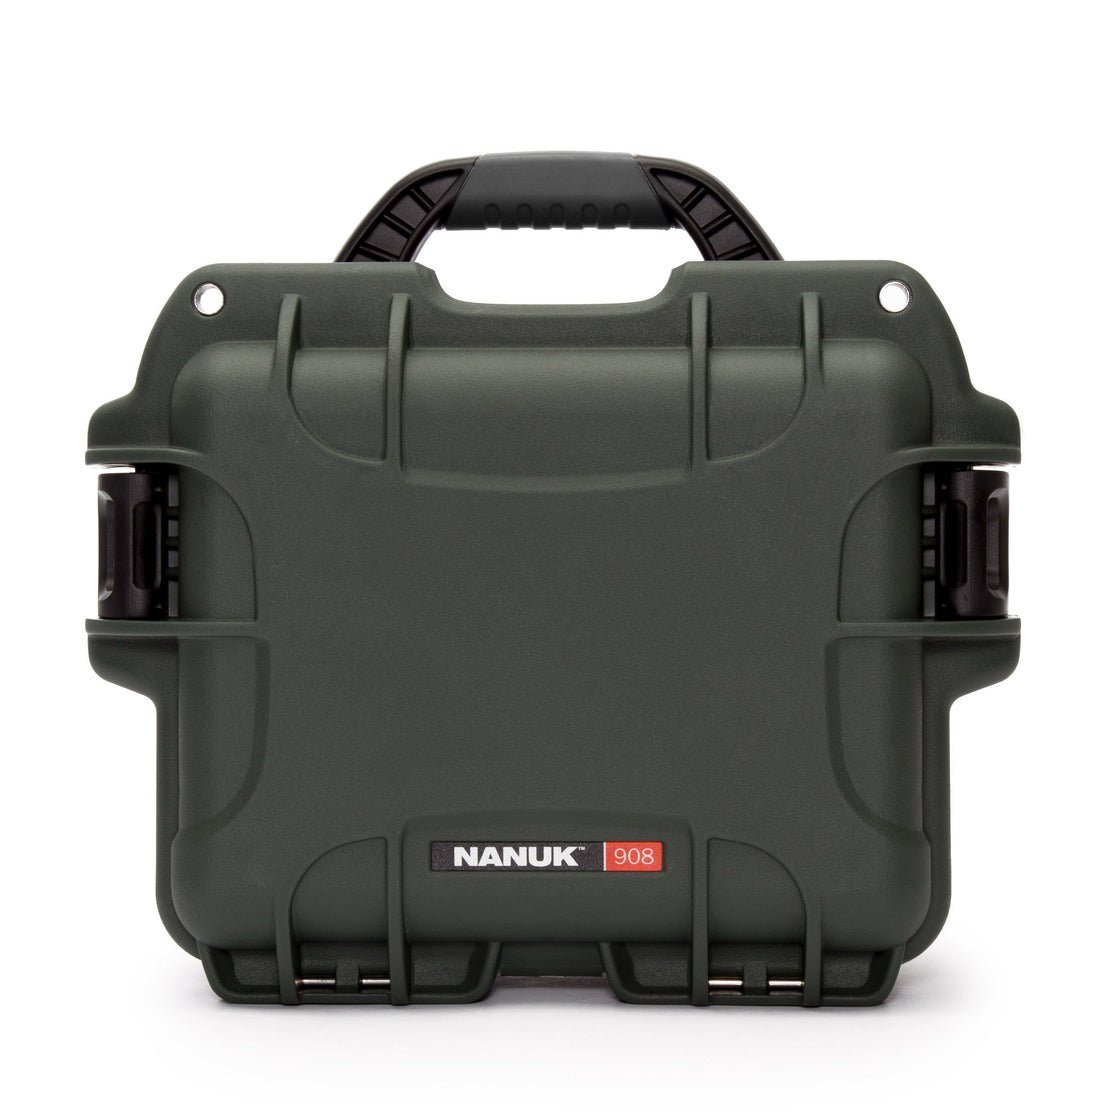 nanuk 905 waterproof hard case orange